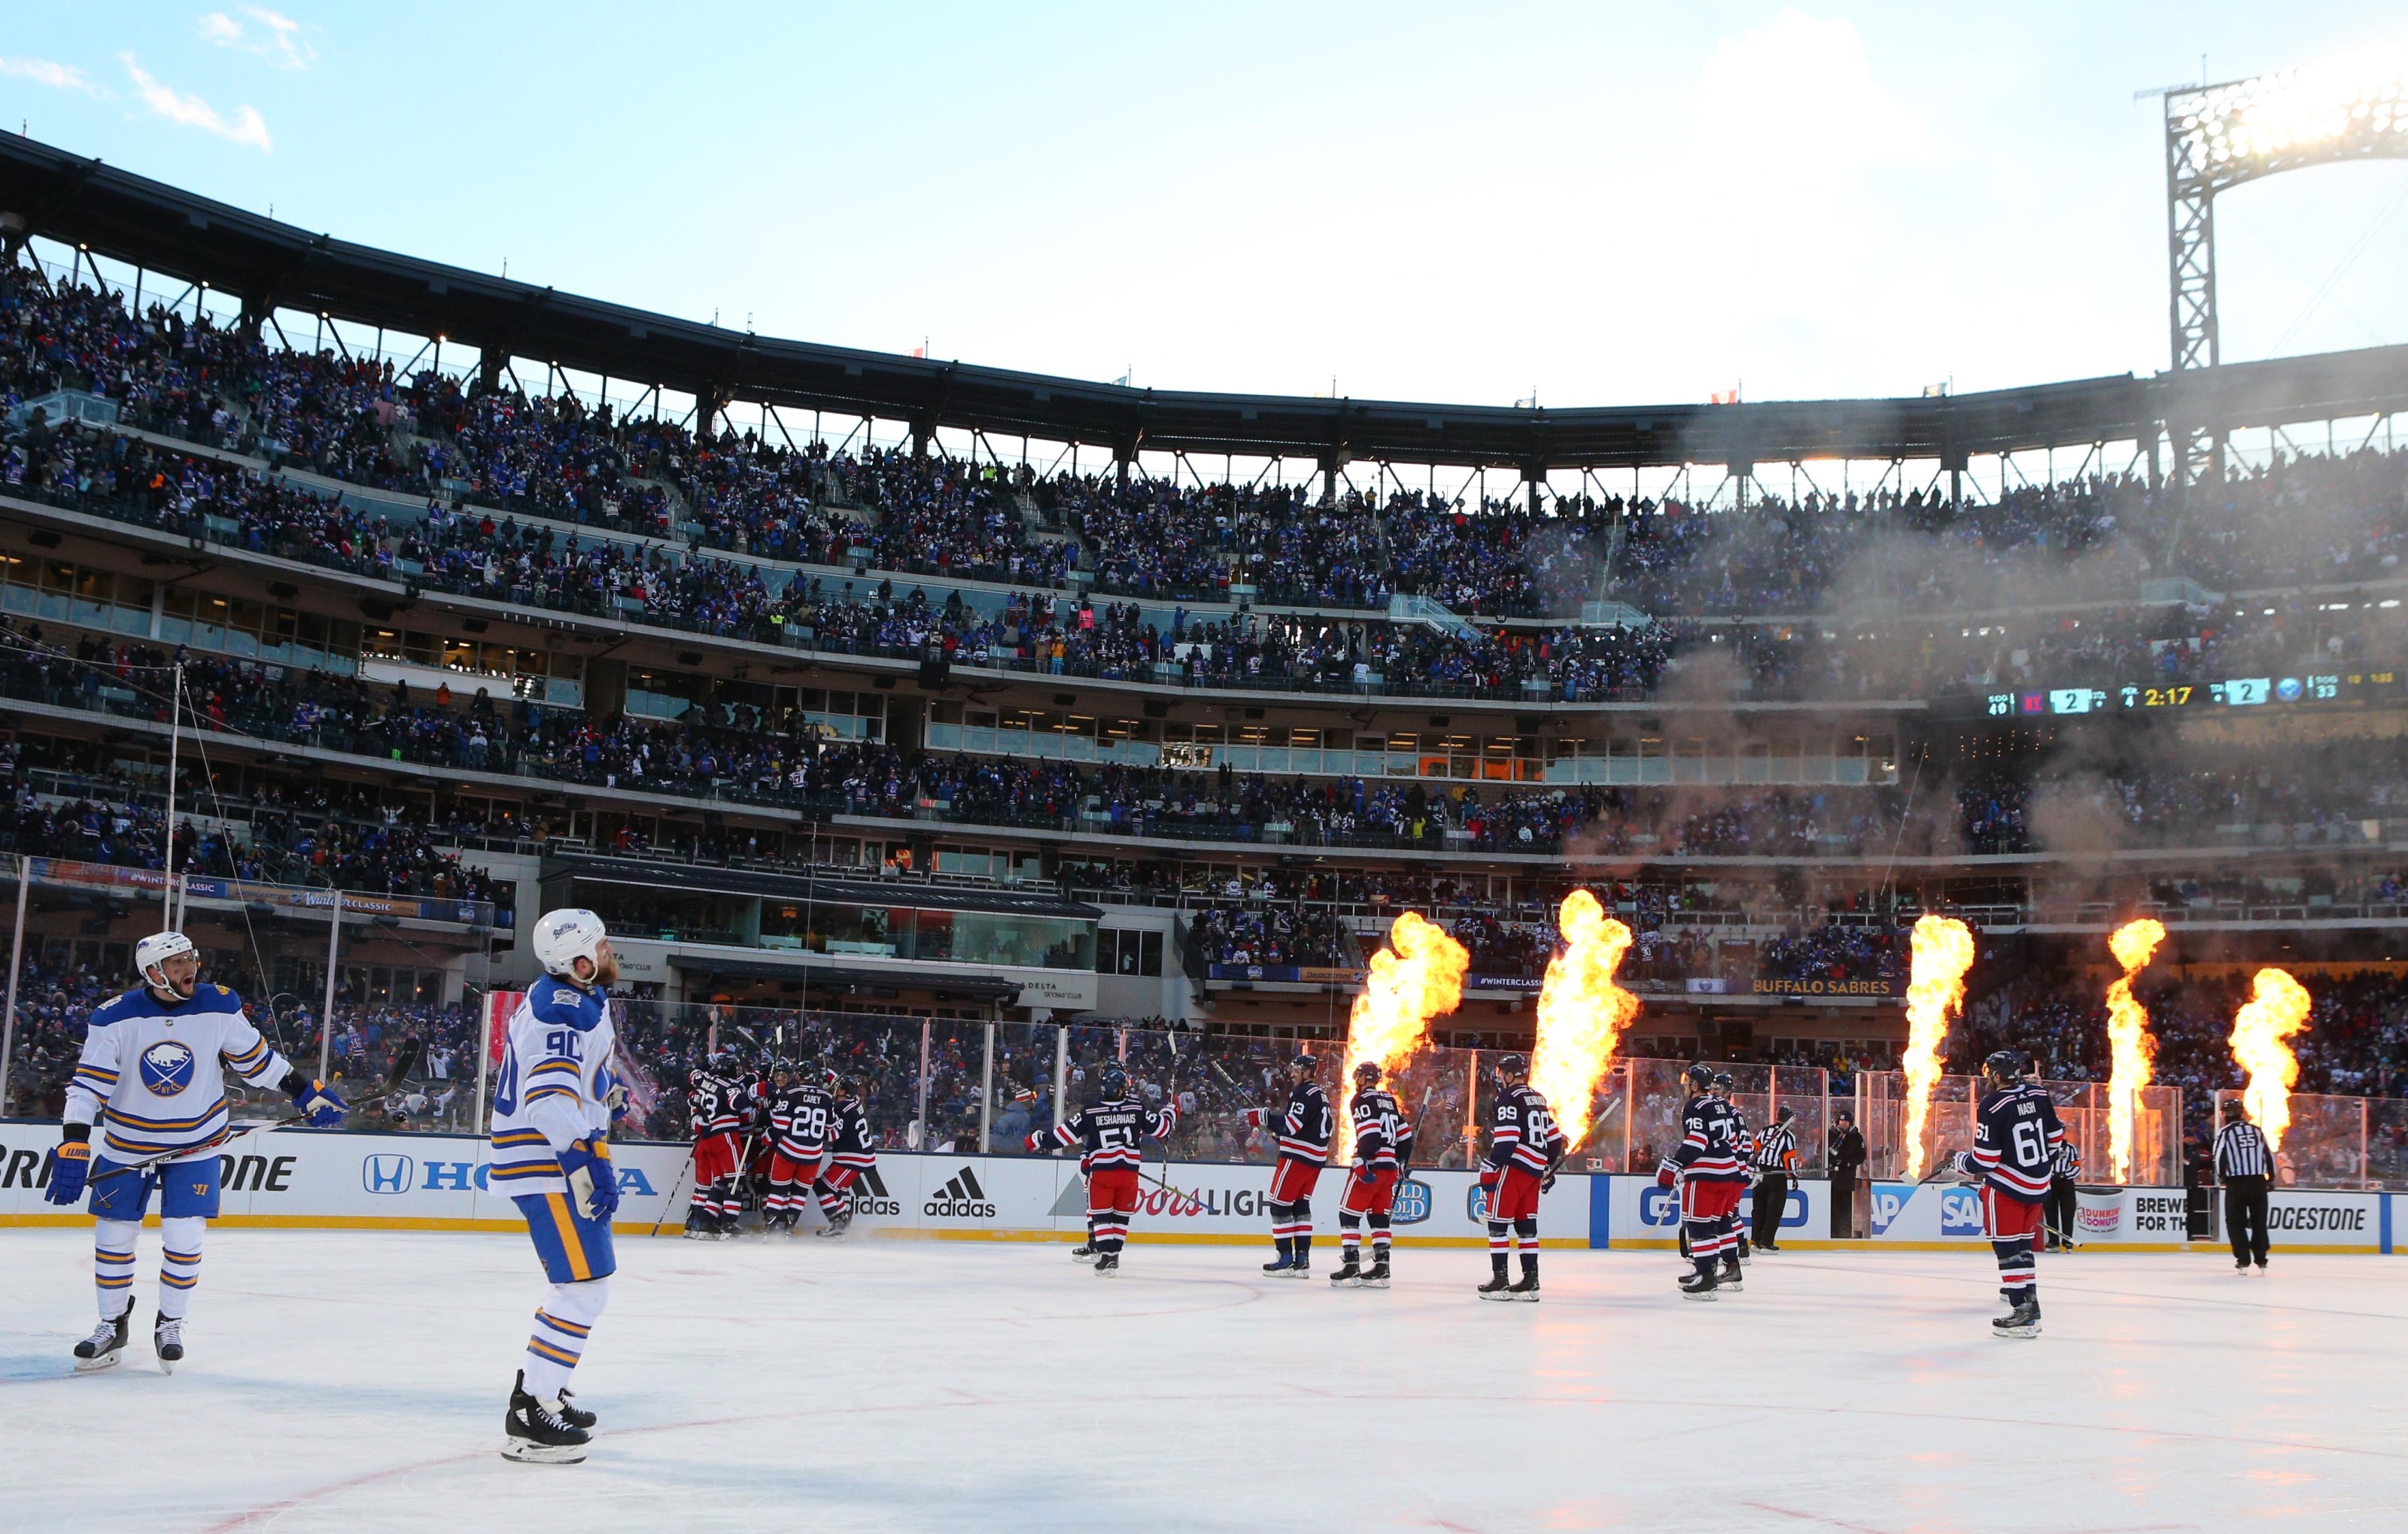 Are outdoor hockey games still great?